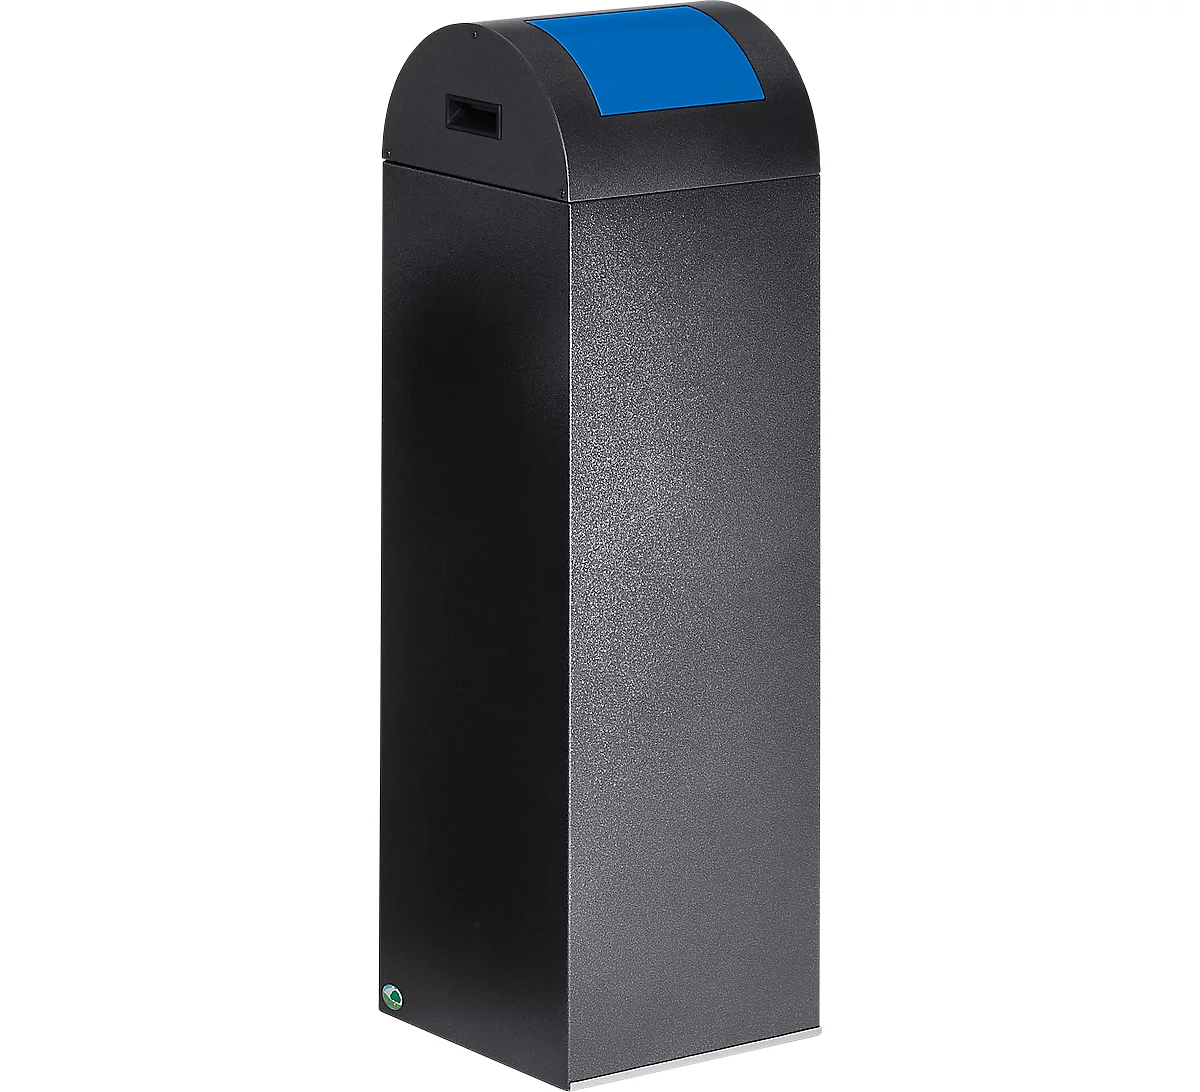 Zelfblussende afvalverzamelaar voor recycleerbaar afval 85R, antiekzilver/blauw